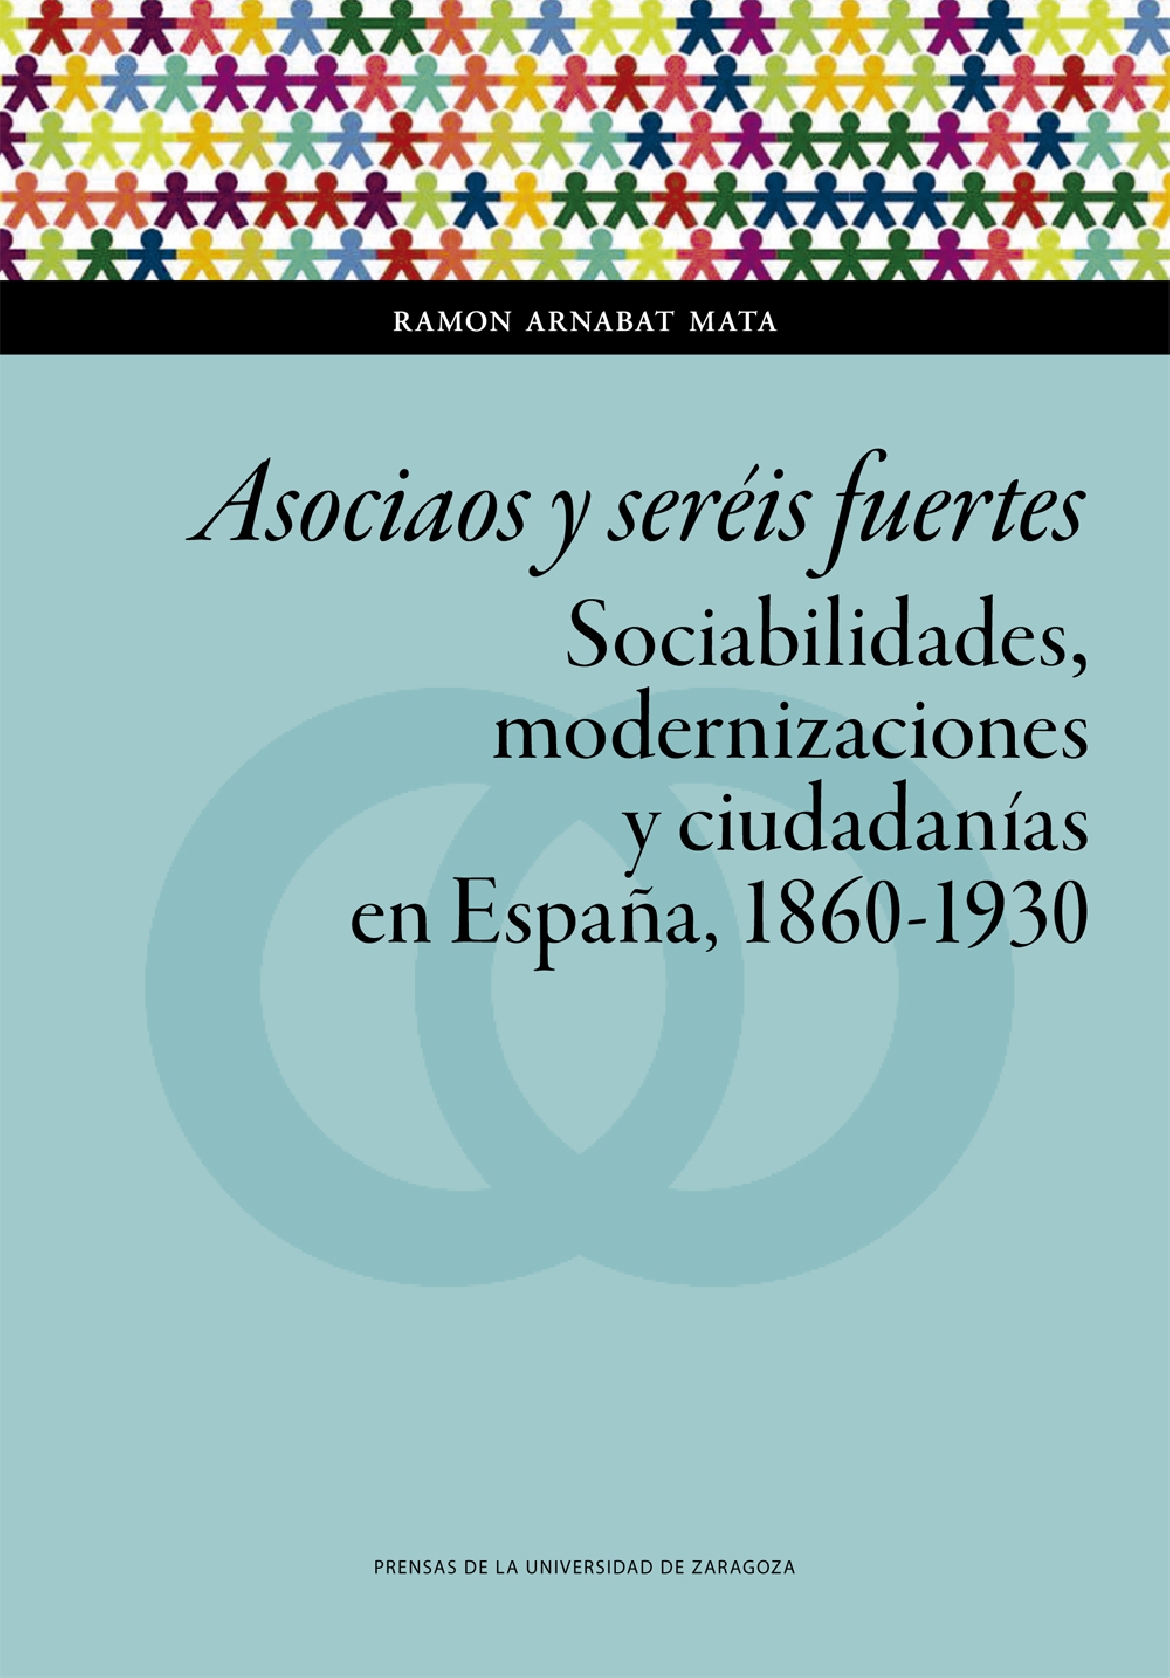 Presentación del libro “ASOCIAOS Y SERÉIS FUERTES. Sociabilidades, modernizaciones y ciudadanías en España, 1860-1930", de Ramon Arnabat Mata